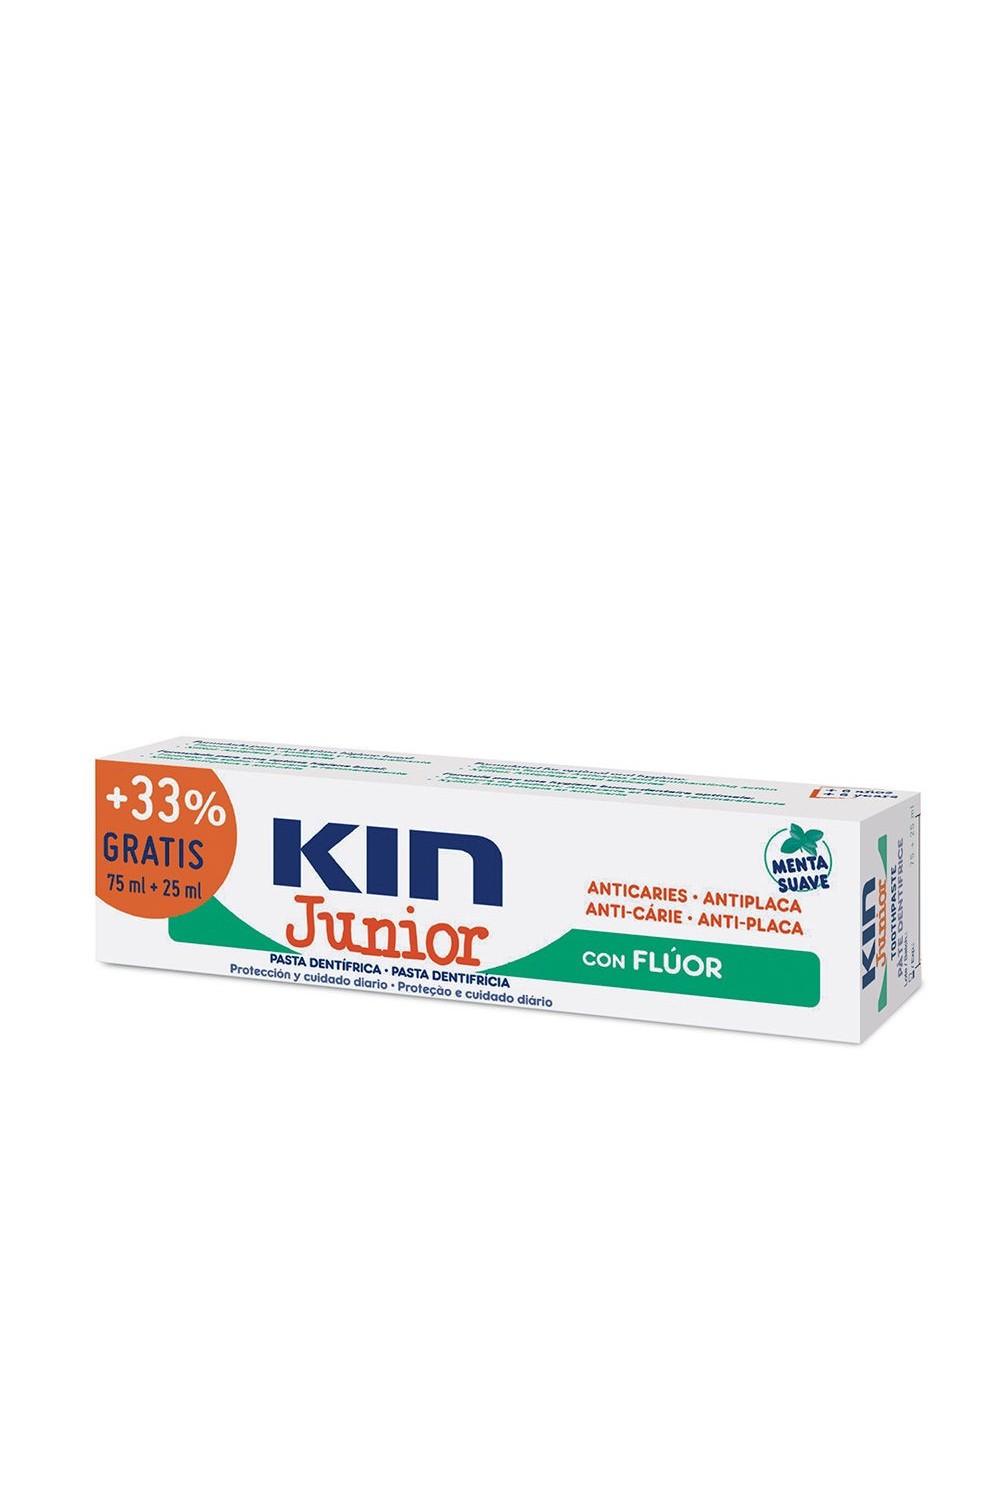 Kin Junior Mint Mild Toothpaste 75ml+25ml